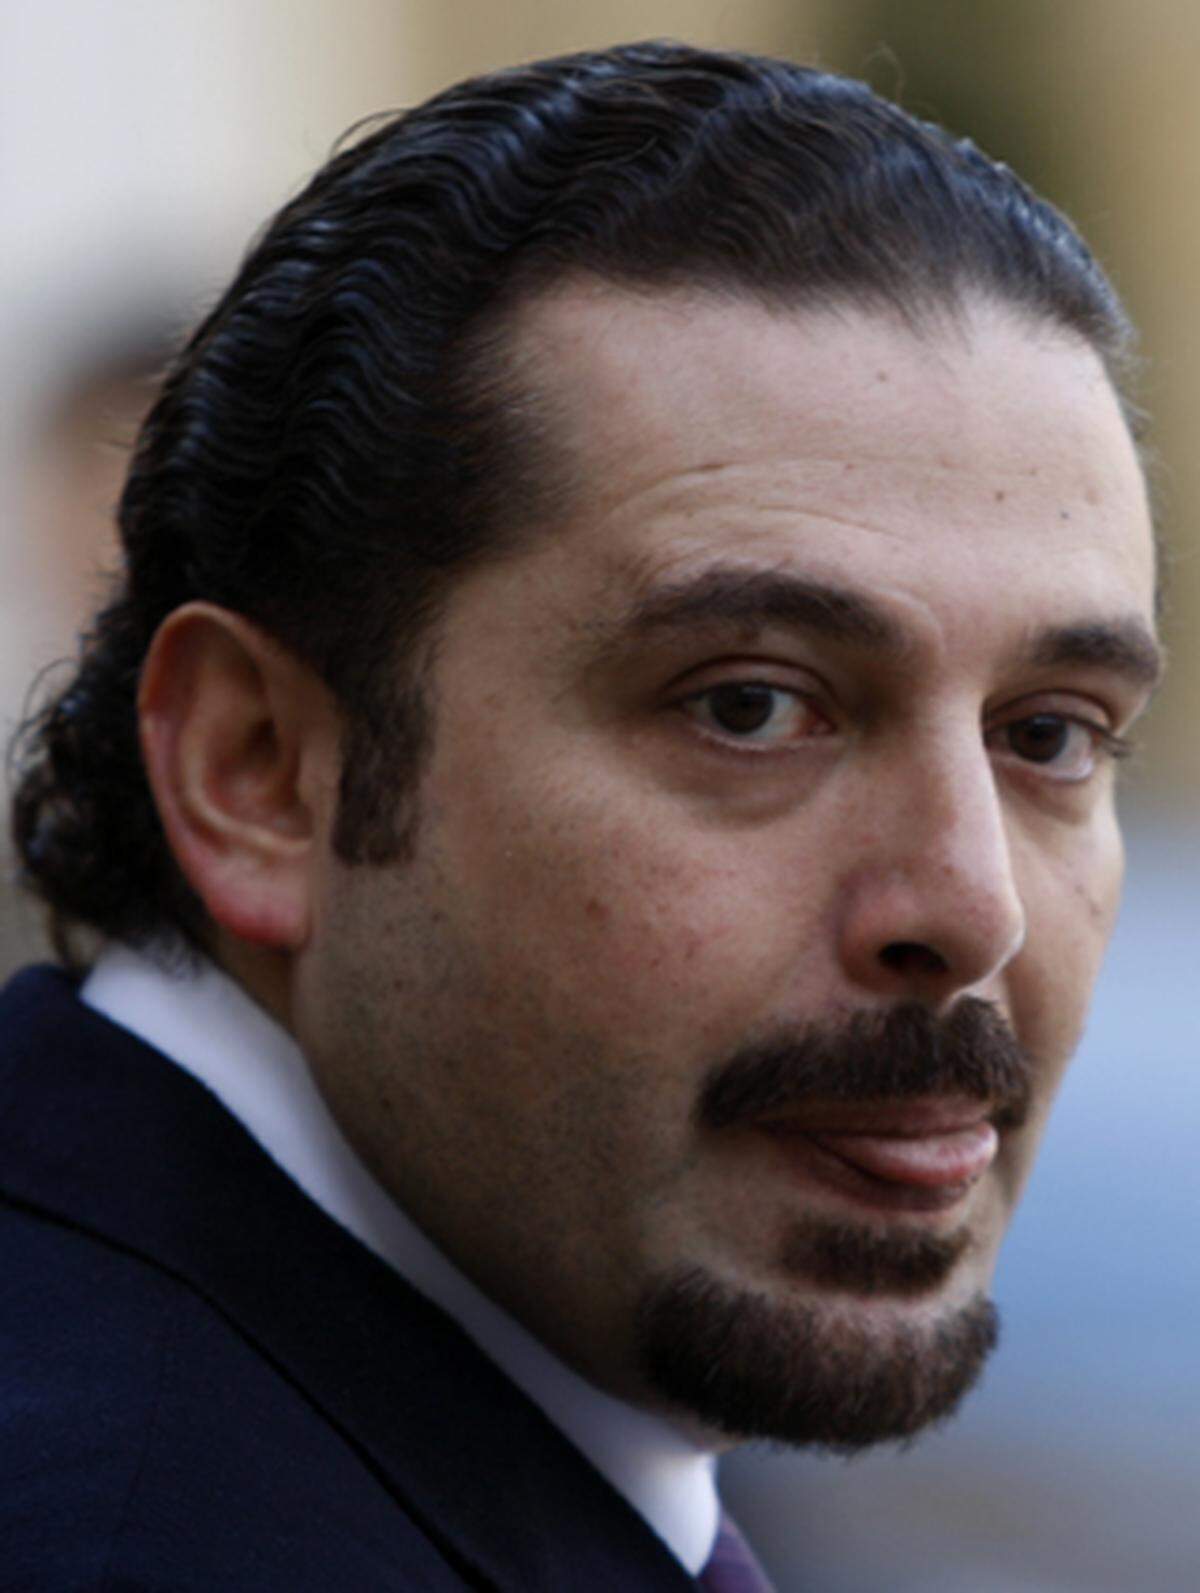 Das ist nicht Carlos aus "Desperate Housewifes", es ist der Sohn des libanesischen Premierministers Rafik Hariri. Er führt die Regentschaft seines Vaters aus, auch als General Manager von Saudi Oger, der Bau- und Telekomfirma der Familie.